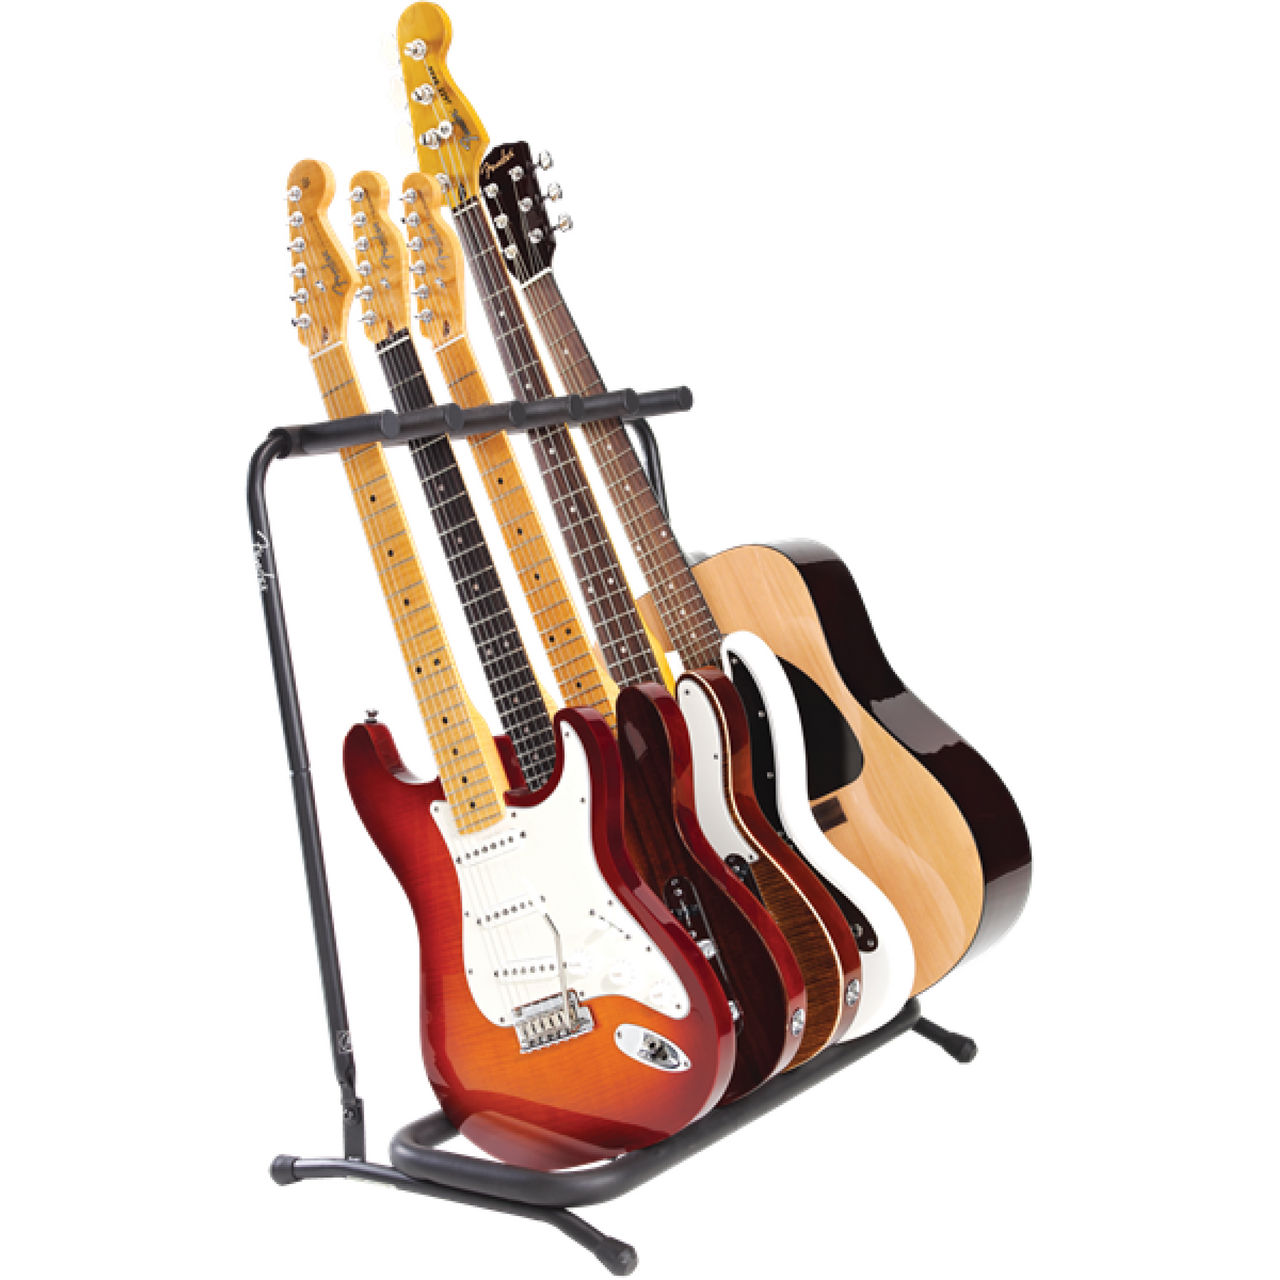 Stand Fender Para Cinco Guitarras, 0991808005